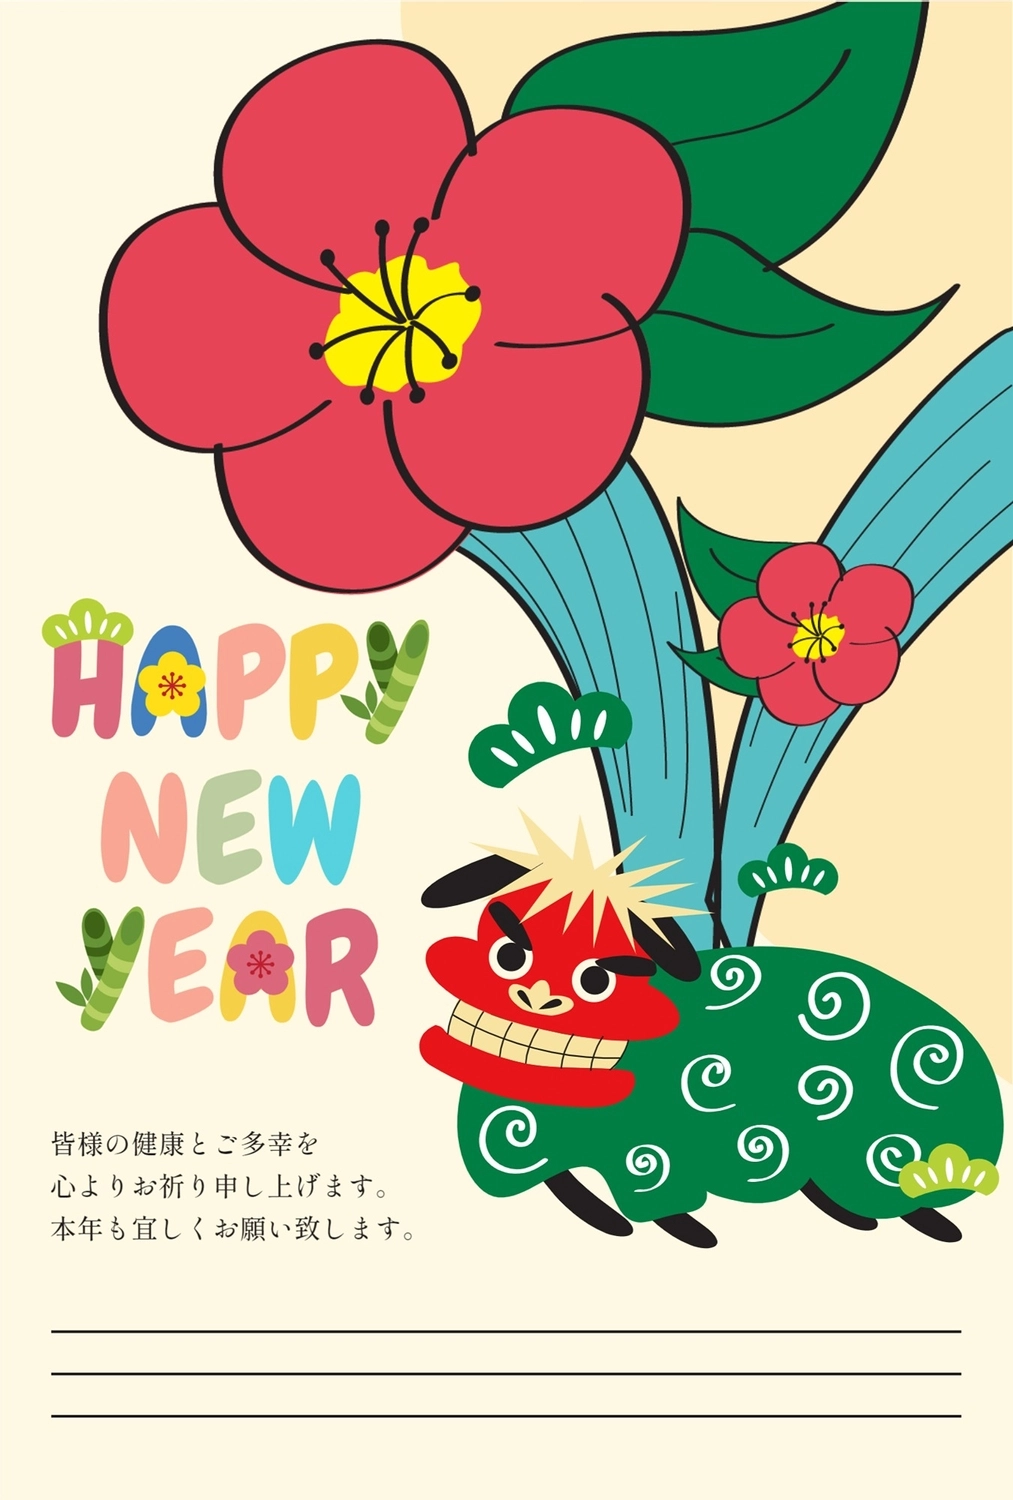 年賀状　獅子舞, No zodiac, fourth sign of Chinese zodiac (The Hare, 5am-7am, east, February), 2023, New Year Card template